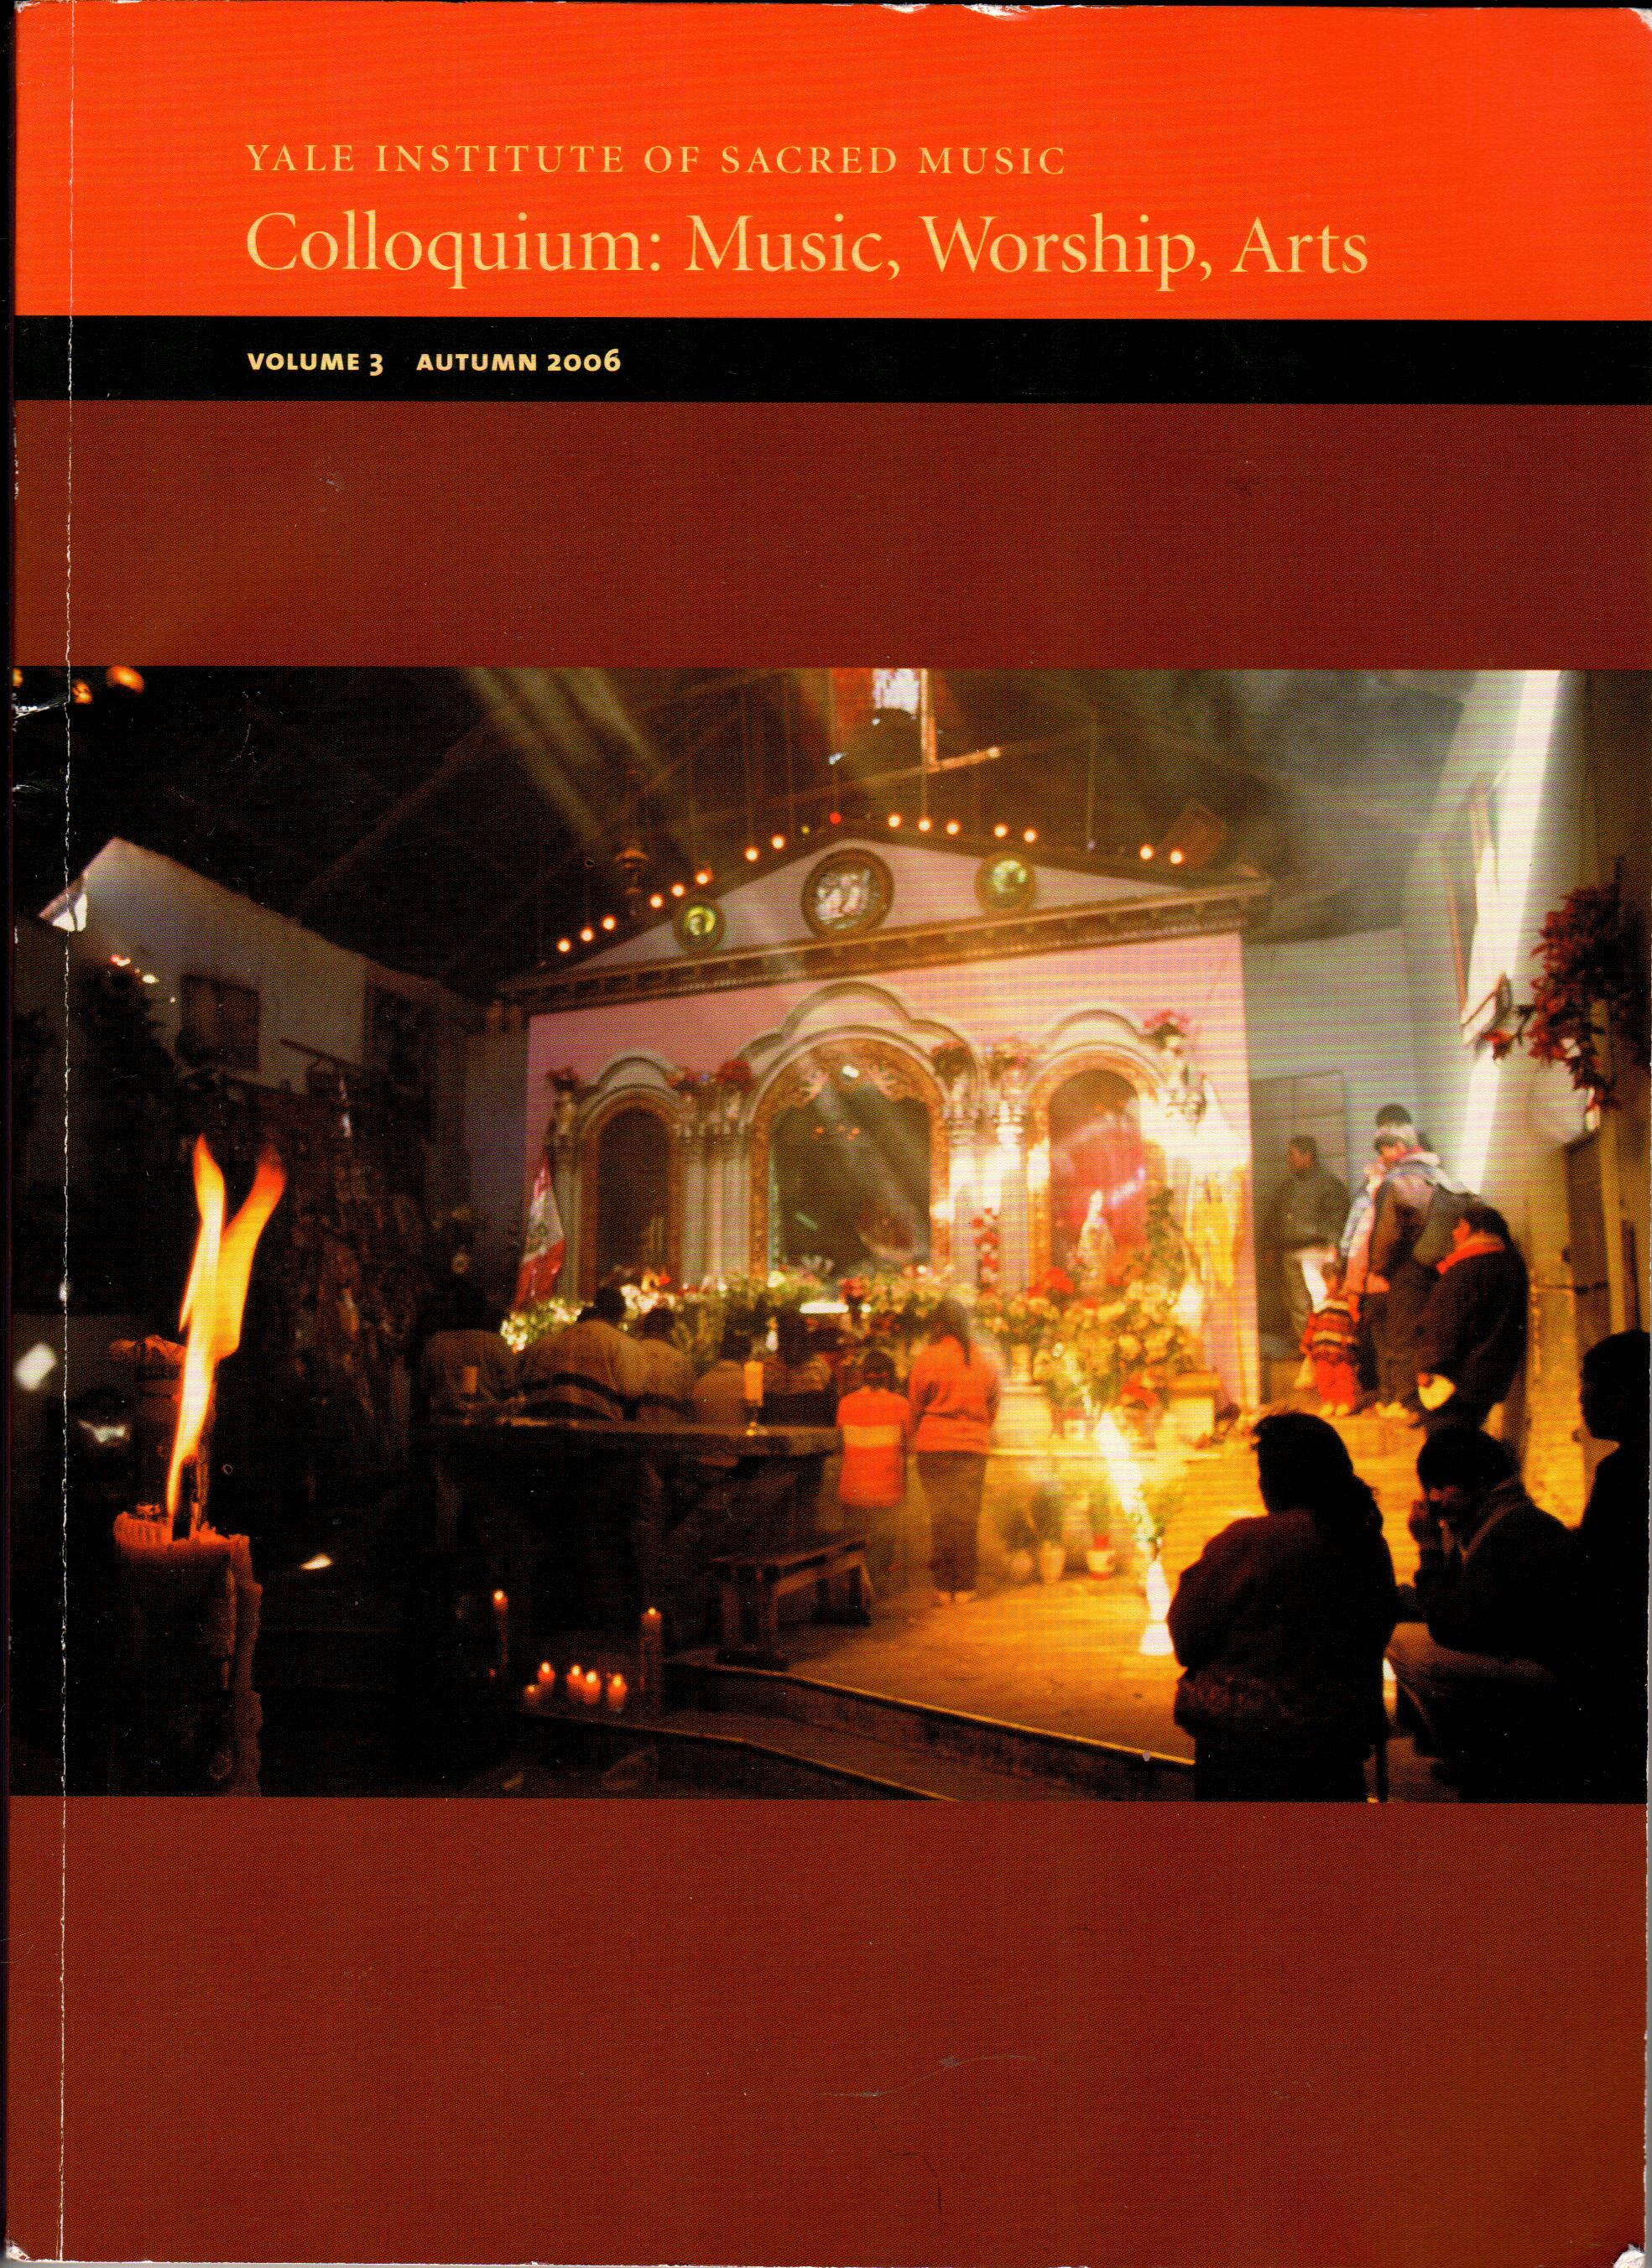 Cover of Colloquium: Music, Worship, Arts Vol. 3 Autumn 2006